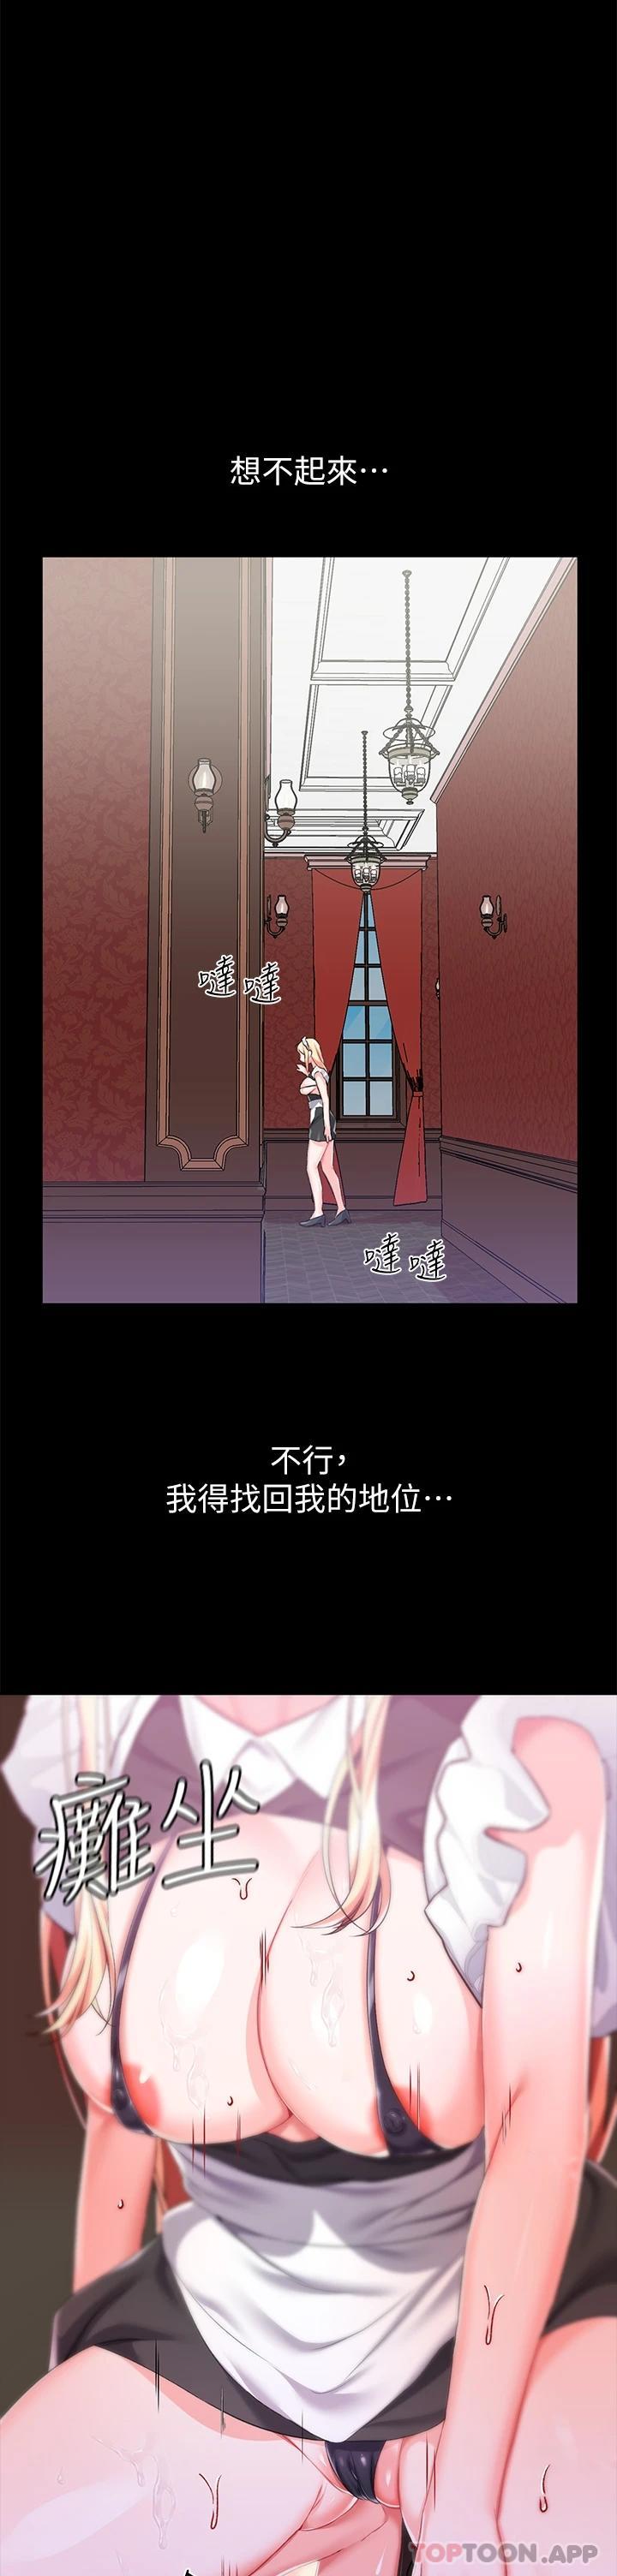 韩国污漫画 調教宮廷惡女 第21话自愿当主人的泄欲工具 17